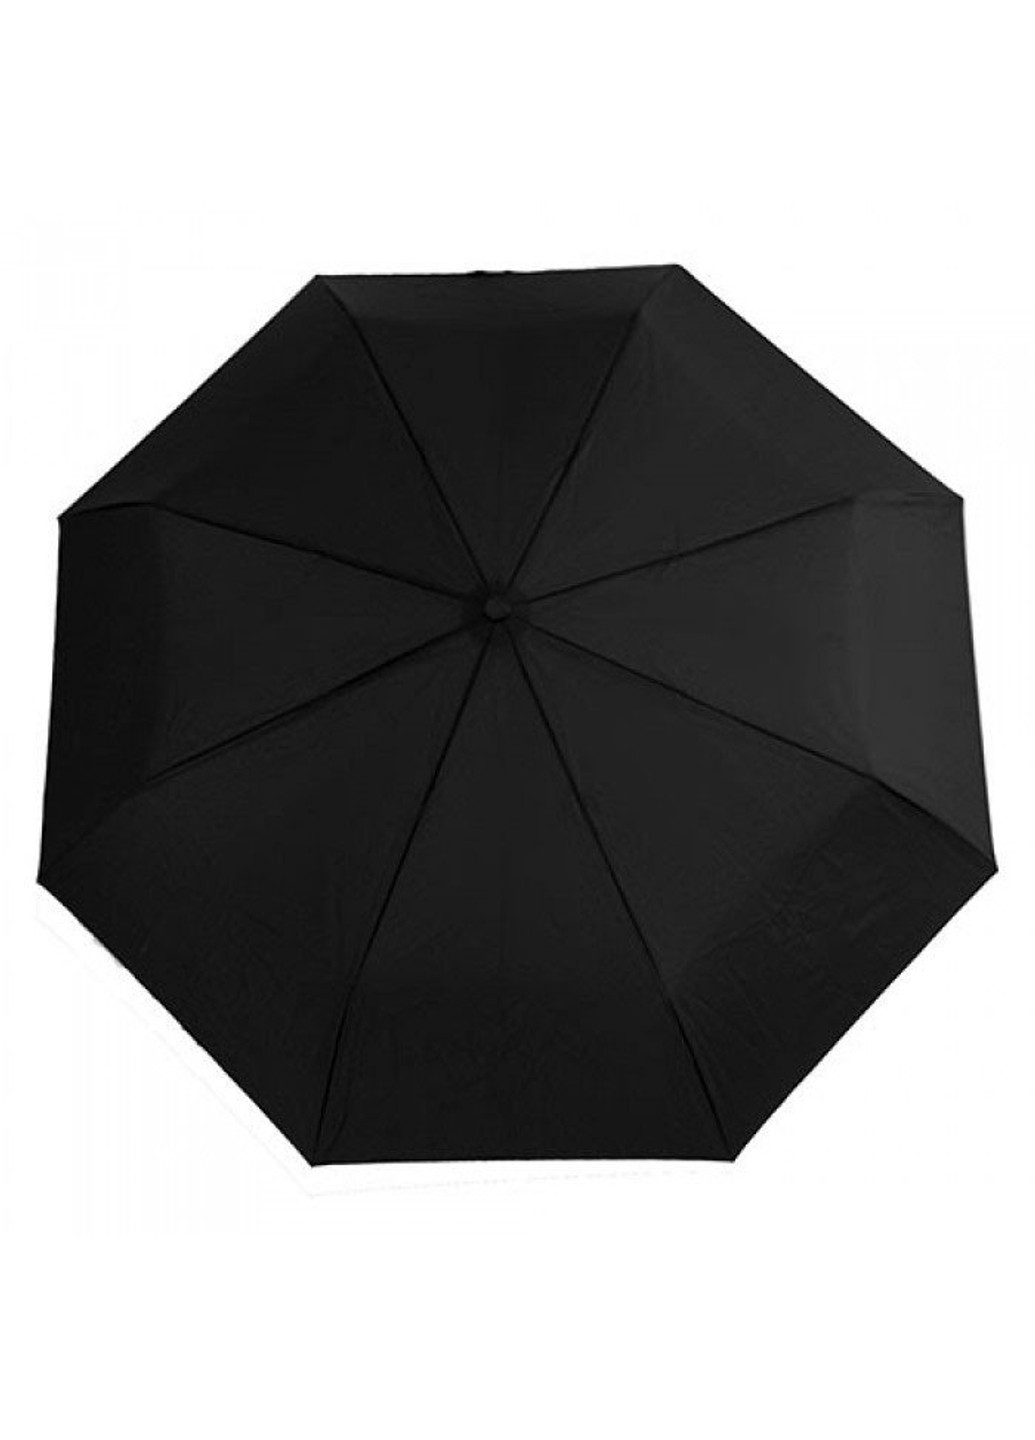 Мужской зонт автомат Open-Close-11 G820 - Black (Черный) Fulton (262087185)